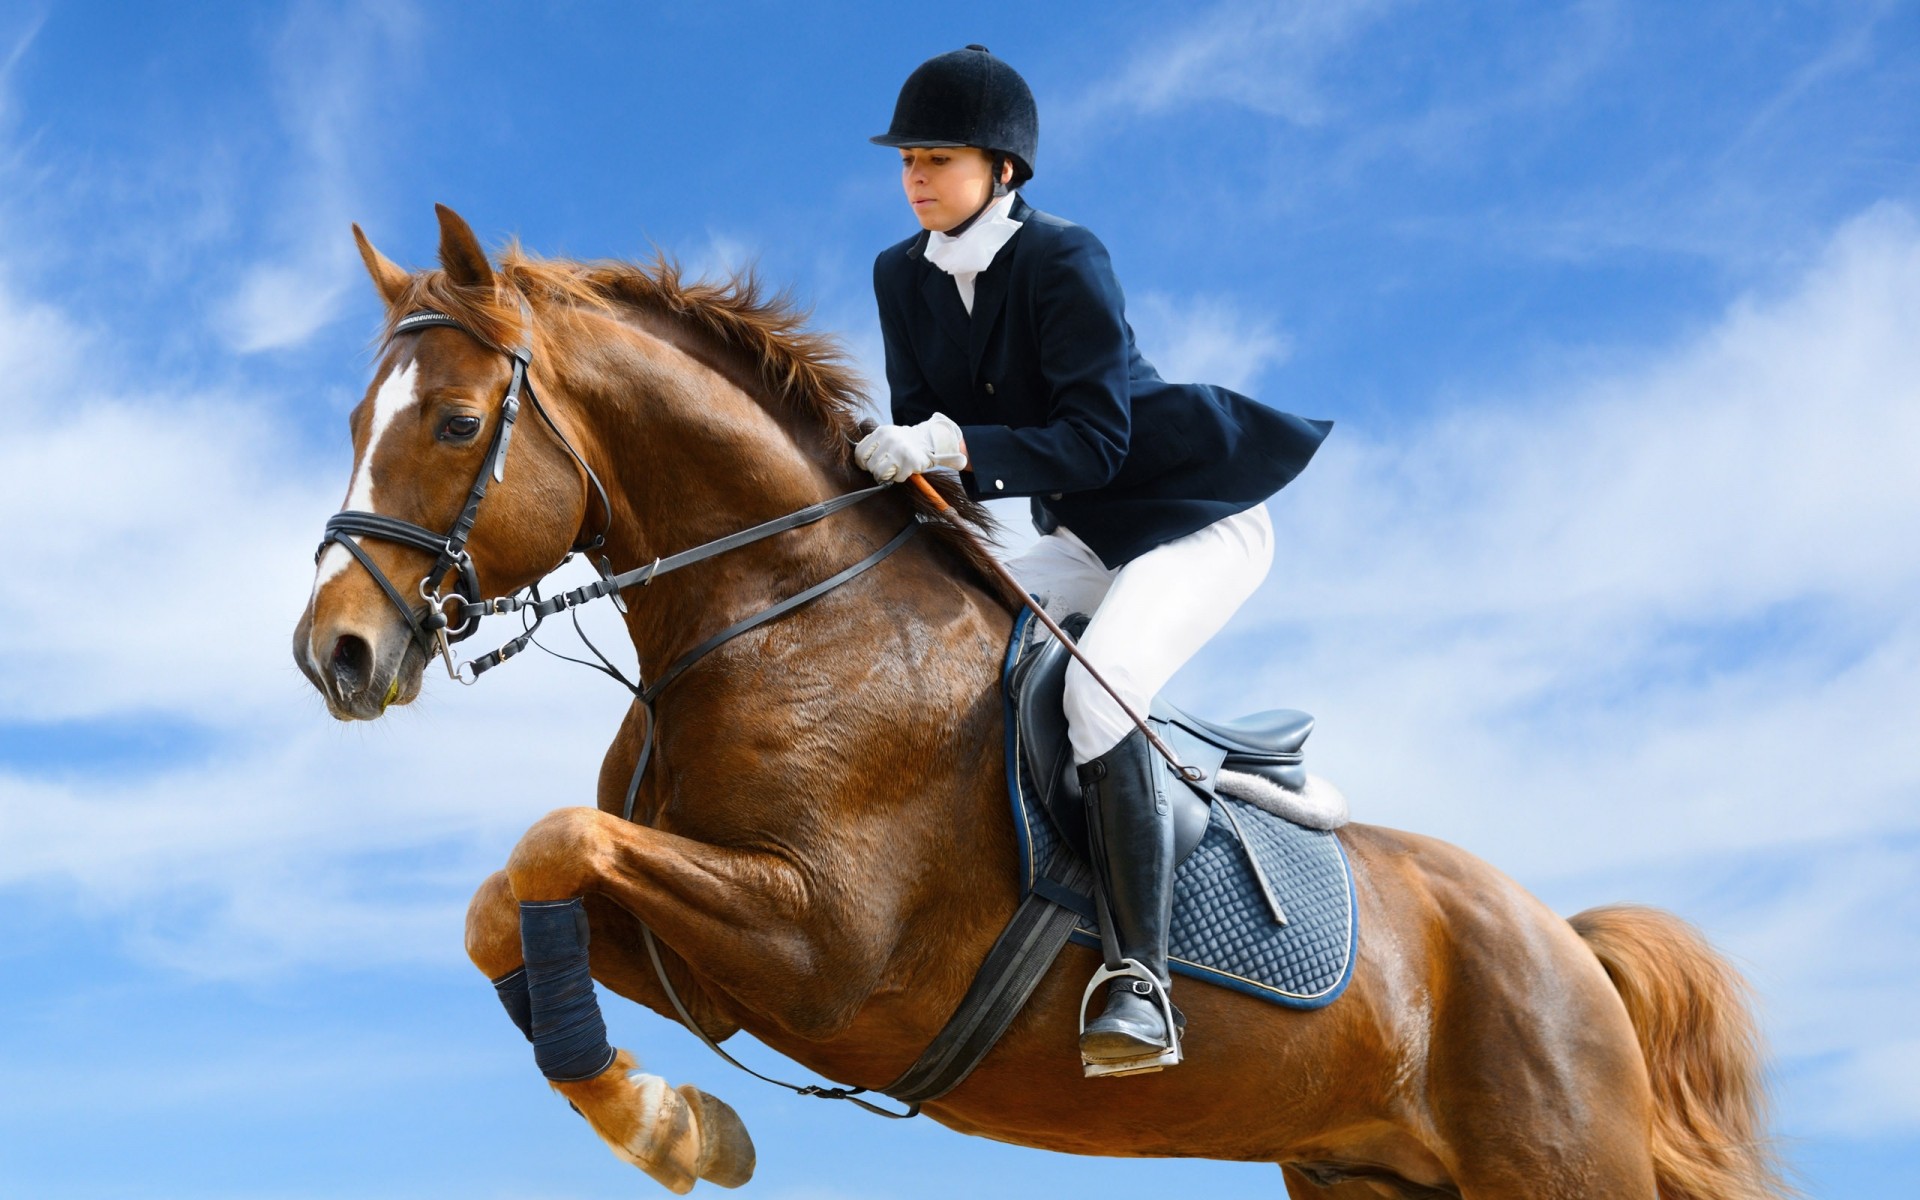 спорт конница сидит лошадь млекопитающее конный конкурс один женщина действие взрослый жеребец коневодство уздечку спорт девушка